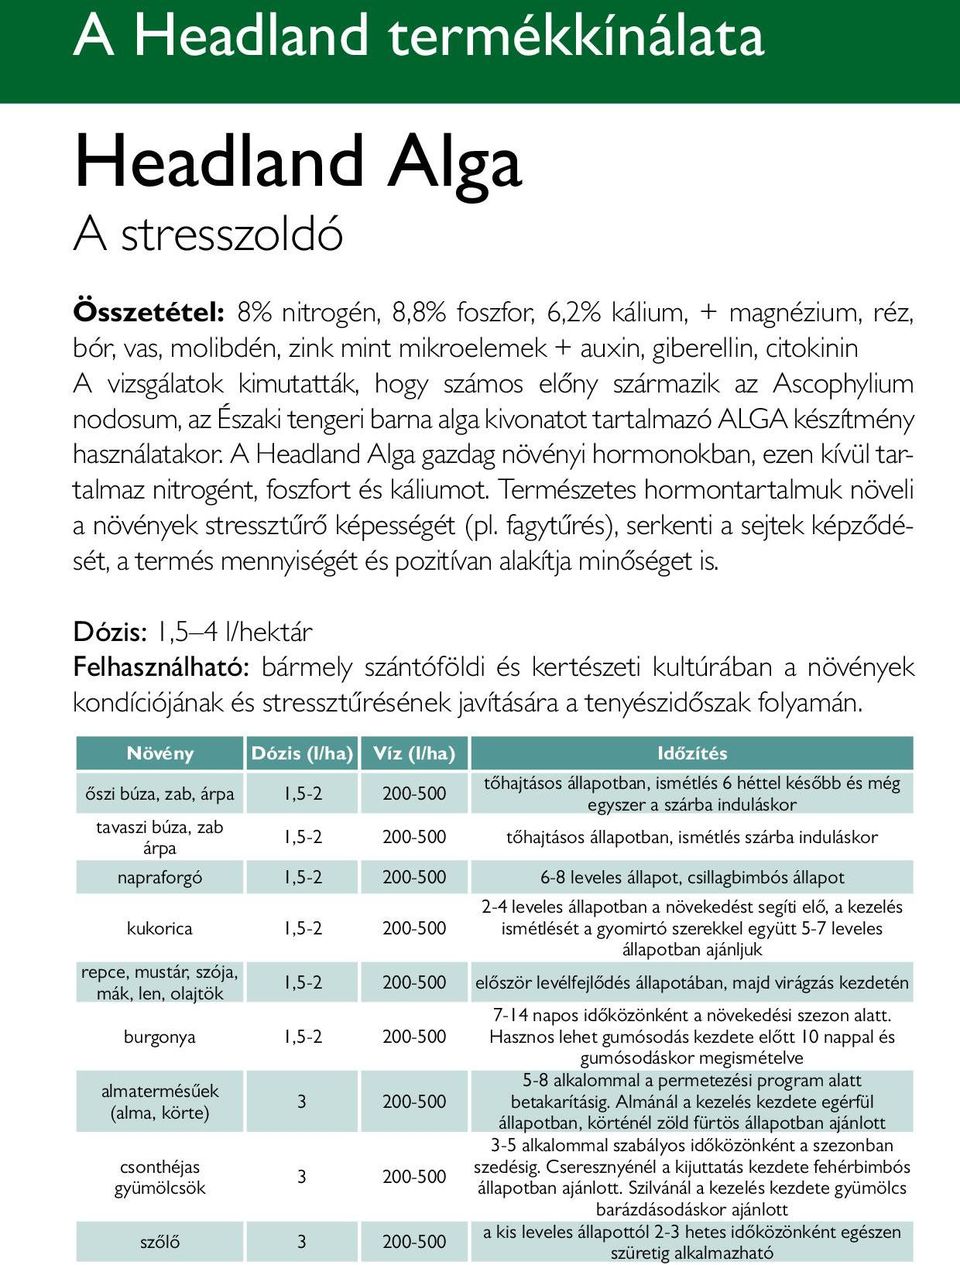 A Headland Alga gazdag növényi hormonokban, ezen kívül tartalmaz nitrogént, foszfort és káliumot. Természetes hormontartalmuk növeli a növények stressztűrő képességét (pl.